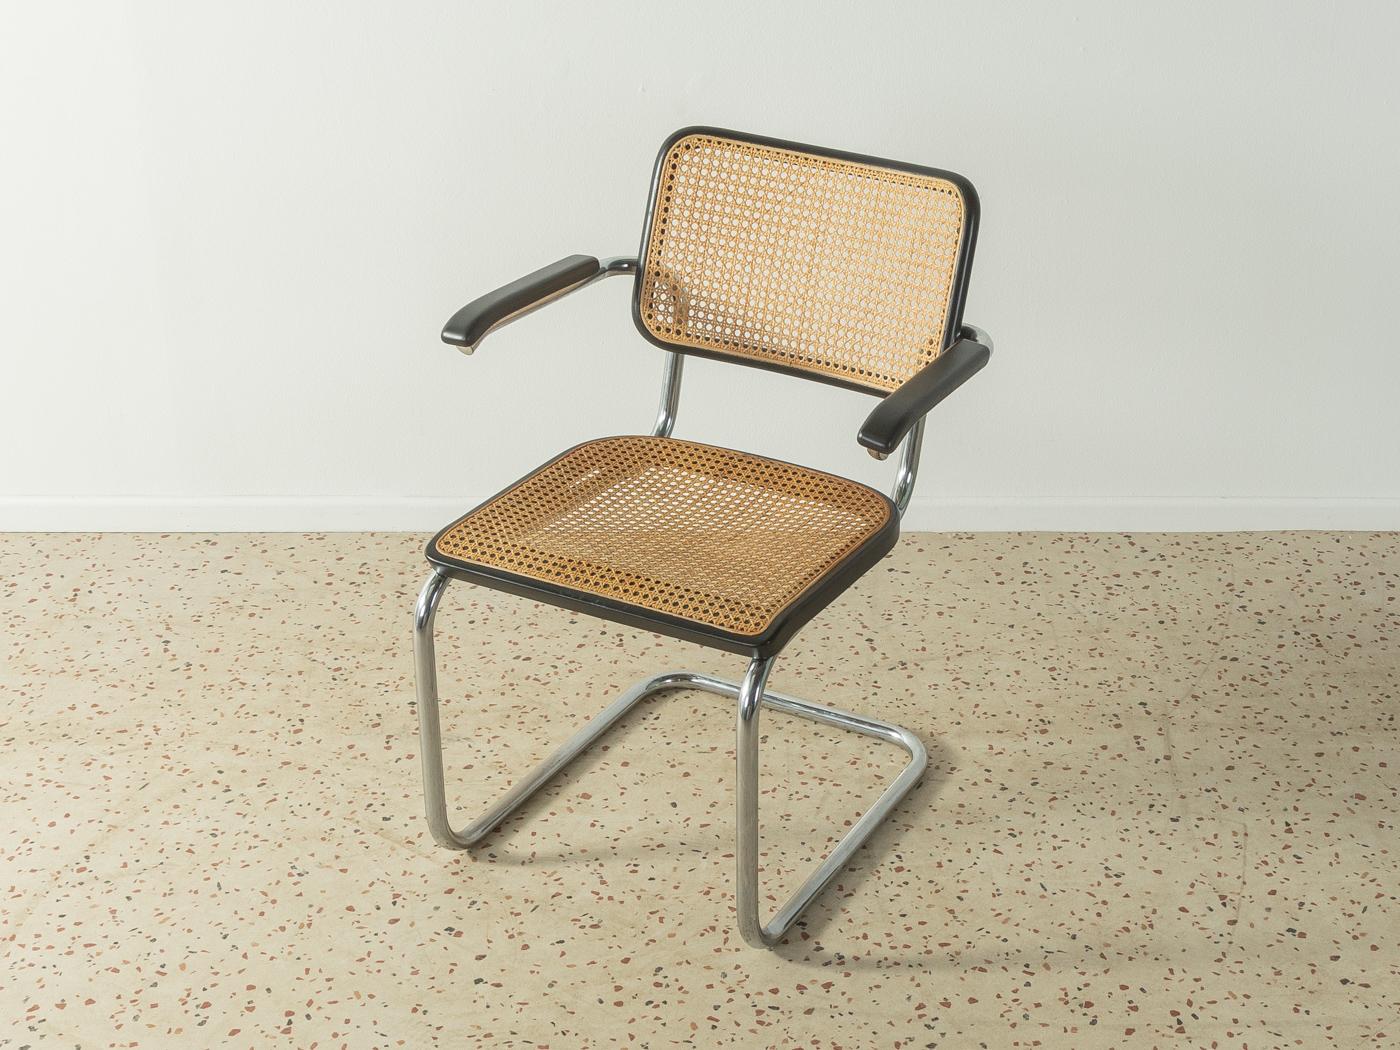 Légendaire chaise en acier tubulaire, modèle S 64, conçue par Marcel Breuer pour Thonet (1928). Cadre solide en acier tubulaire chromé. L'assise et le dossier sont recouverts de la 